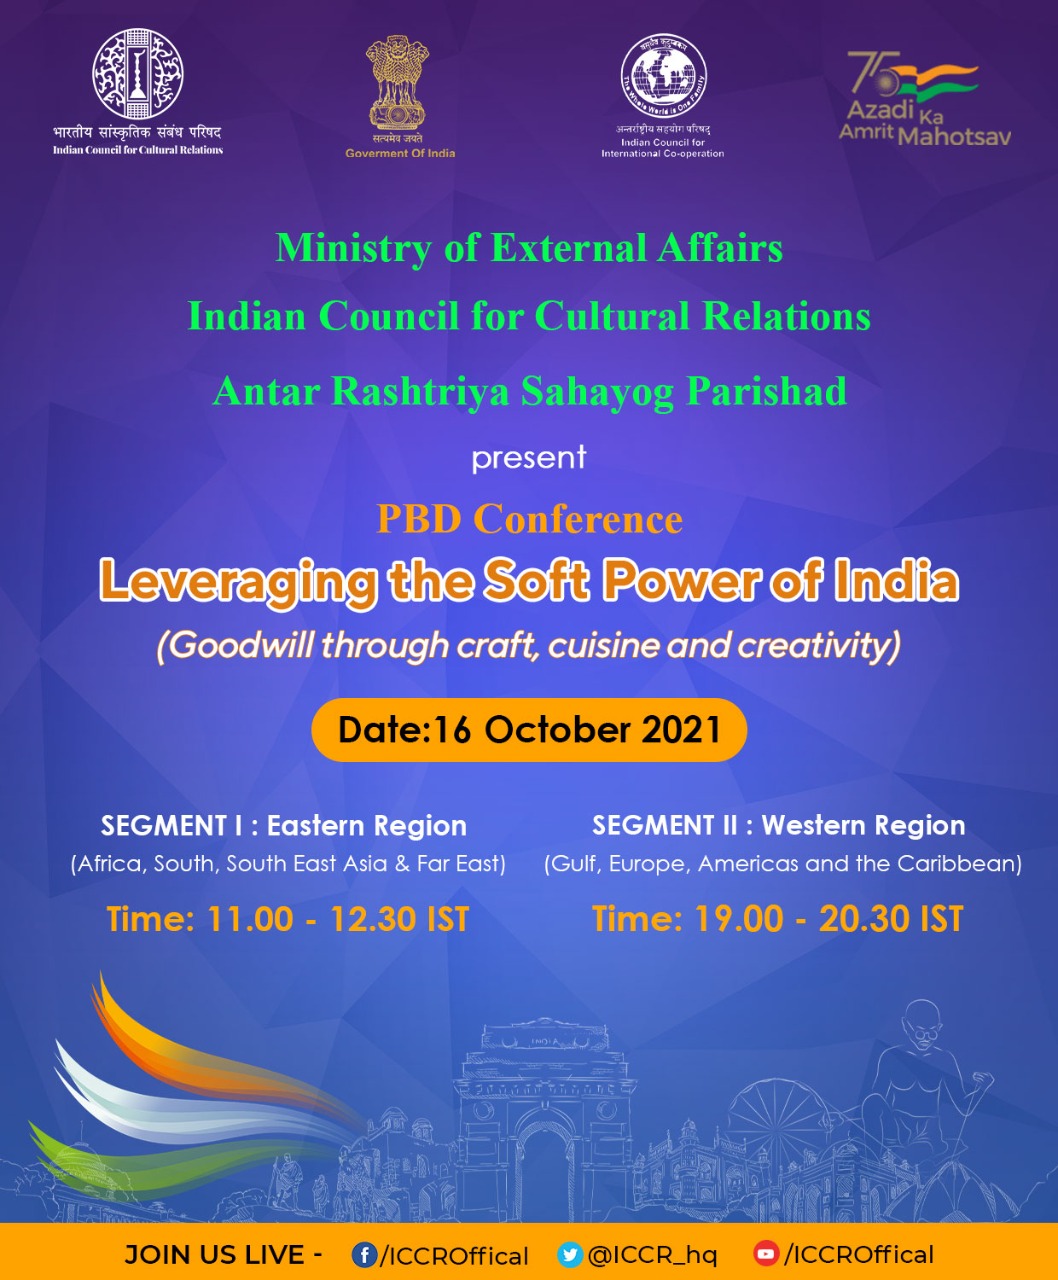 ICCR 16 अक्टूबर 2021 को विदेश मंत्रालय और अंतर राष्ट्रीय सहयोग परिषद के सहयोग से आयोजित होने वाले अंतर्राष्ट्रीय आभासी सम्मेलन "भारत की सॉफ्ट पावर का लाभ - शिल्प, व्यंजन और रचनात्मकता के माध्यम से सद्भावना" का आयोजन कर रहा है।